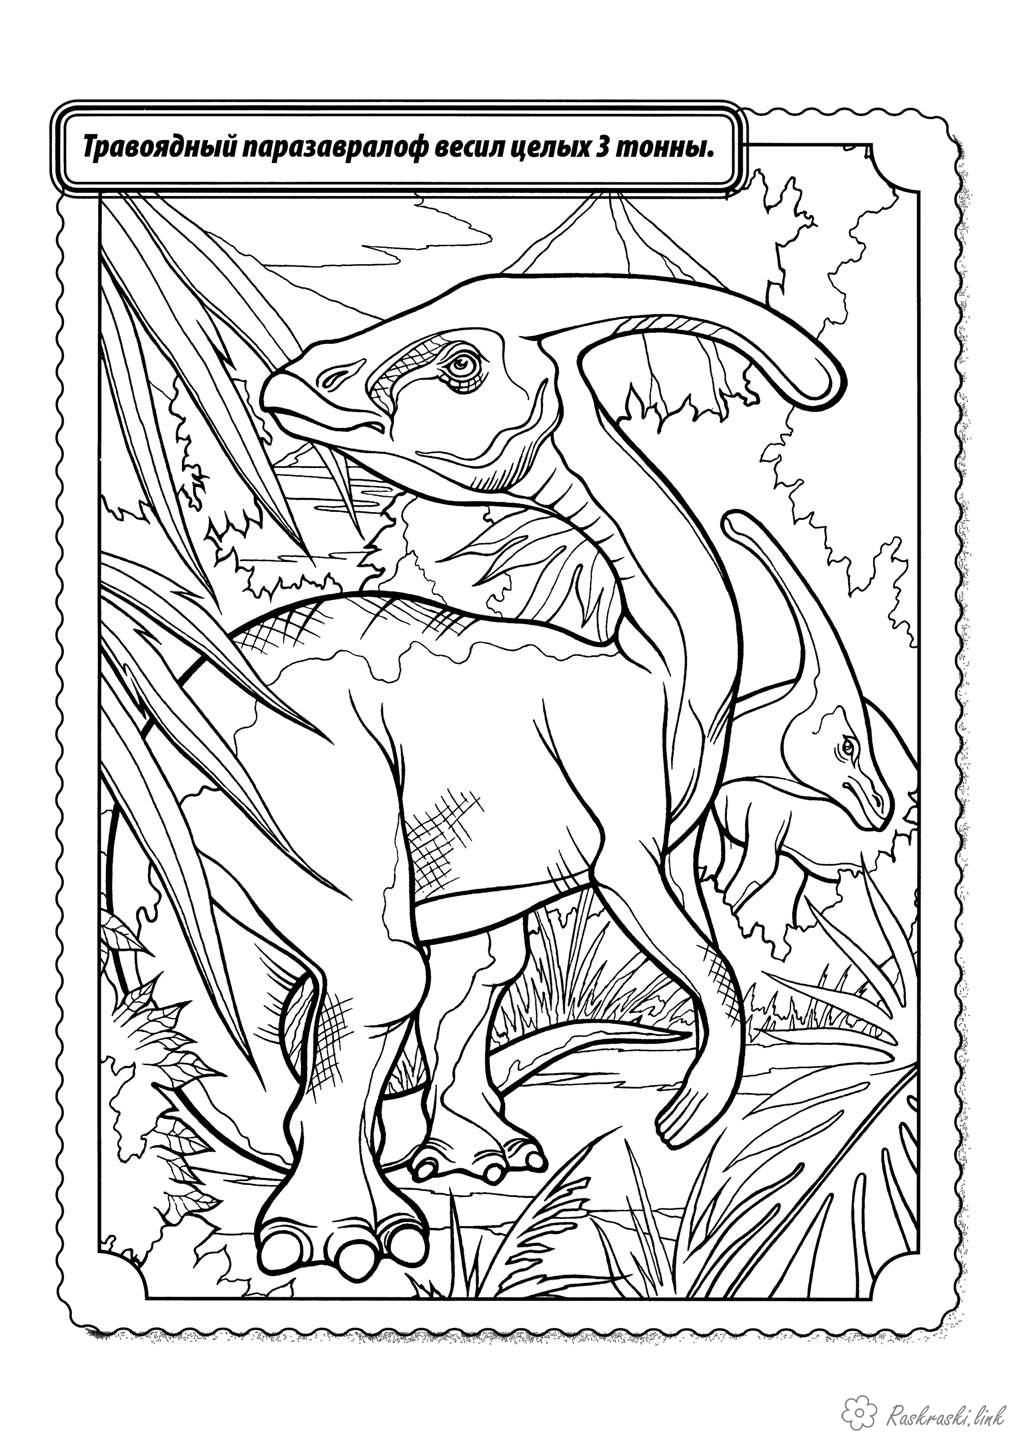 Розмальовки Рептилії Рептилії, динозавр, травоїдний, паразавралоф